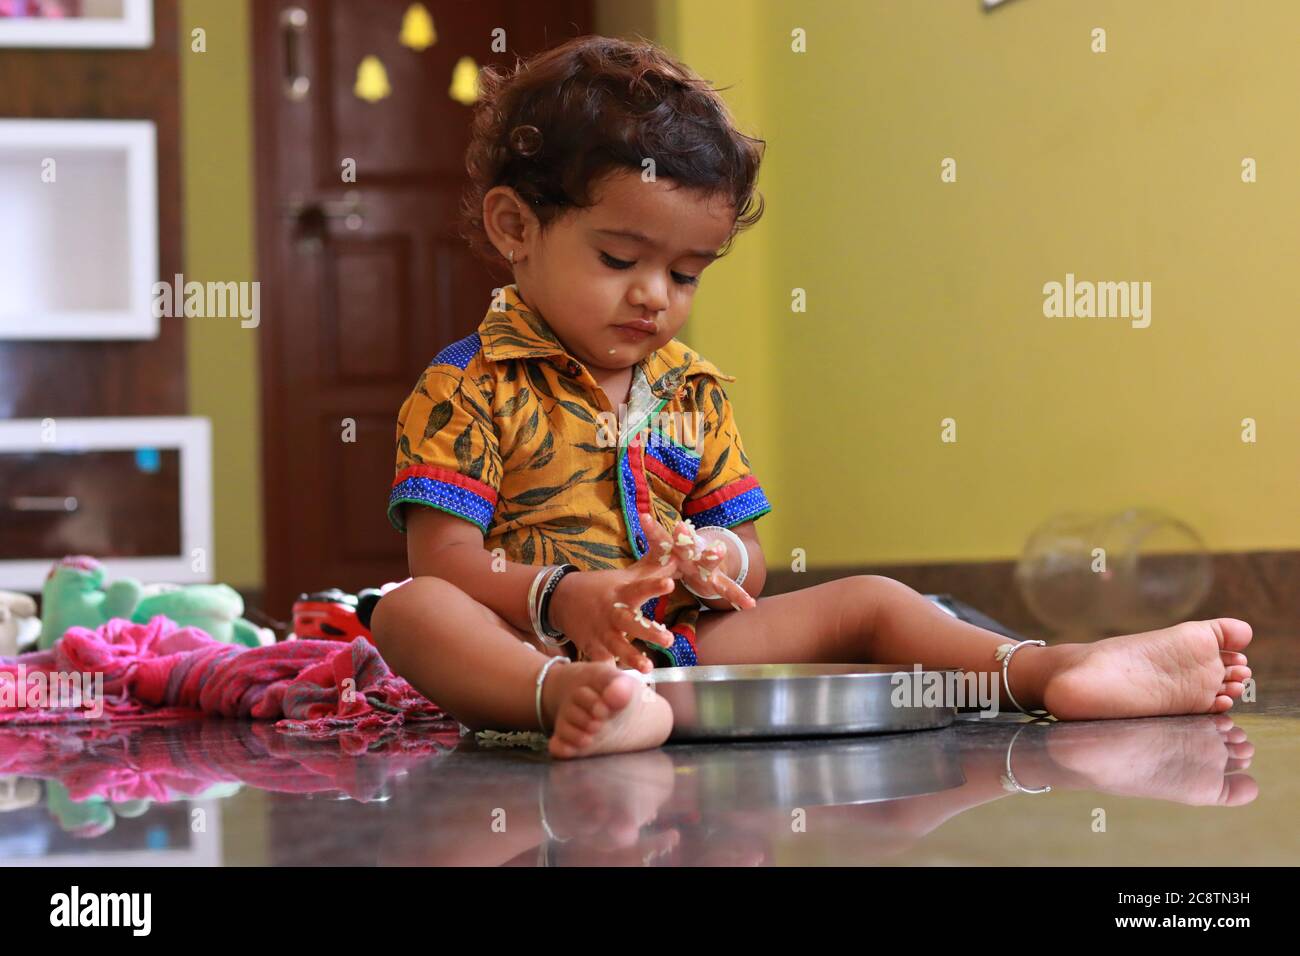 Ein Kind, das auf Essen auf einem Teller schaut Stockfoto